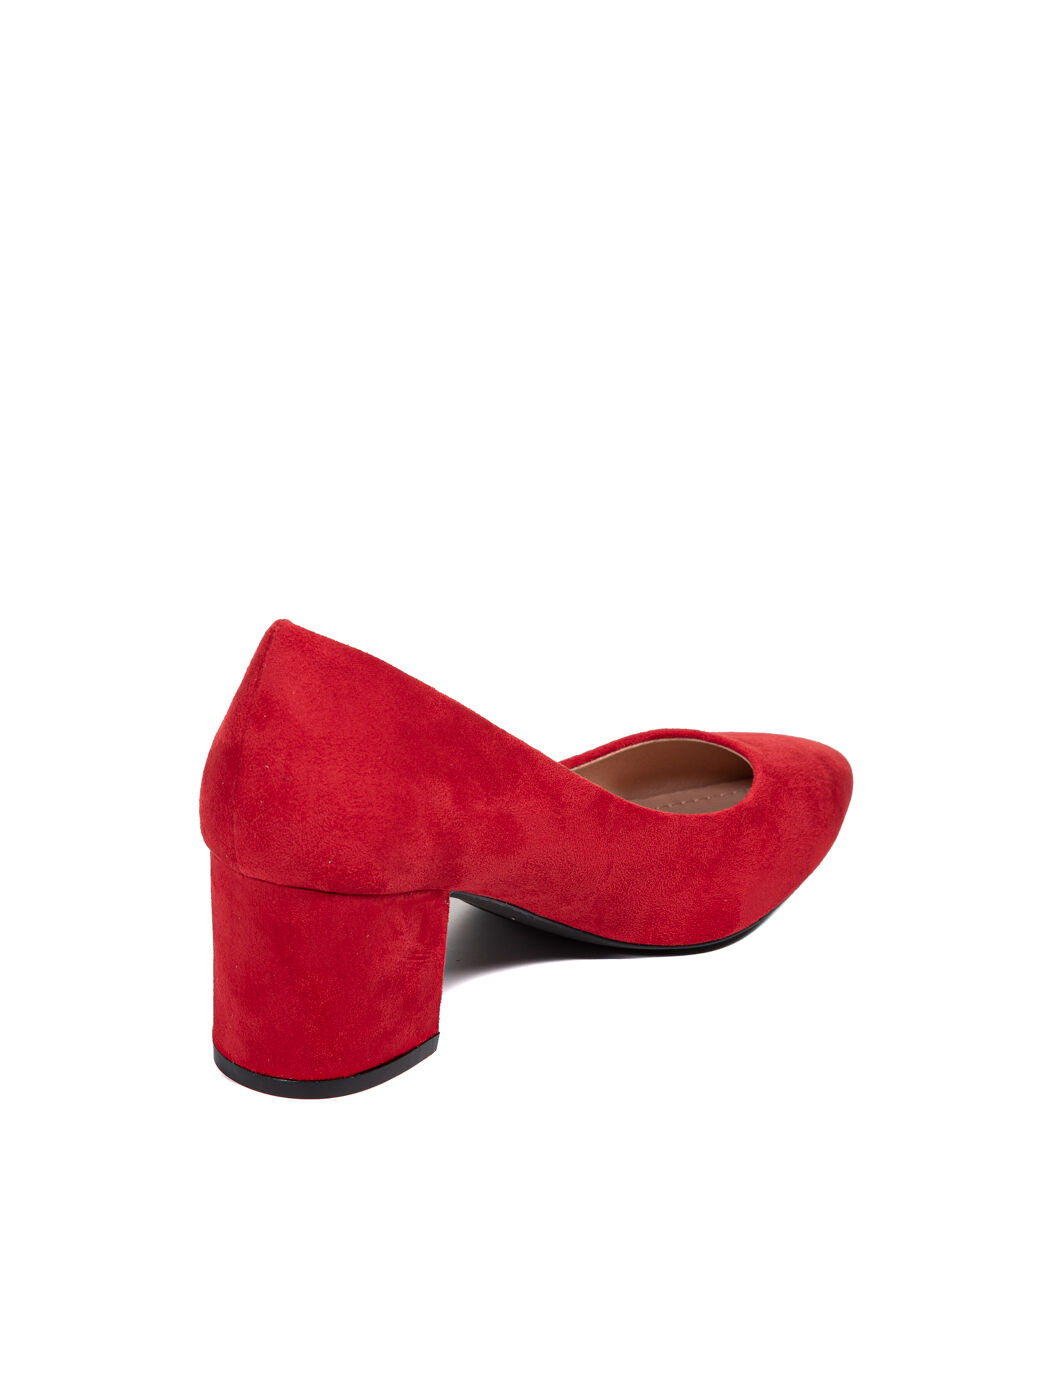 Туфли женские красные экозамша каблук устойчивый демисезон от производителя BM вид 1